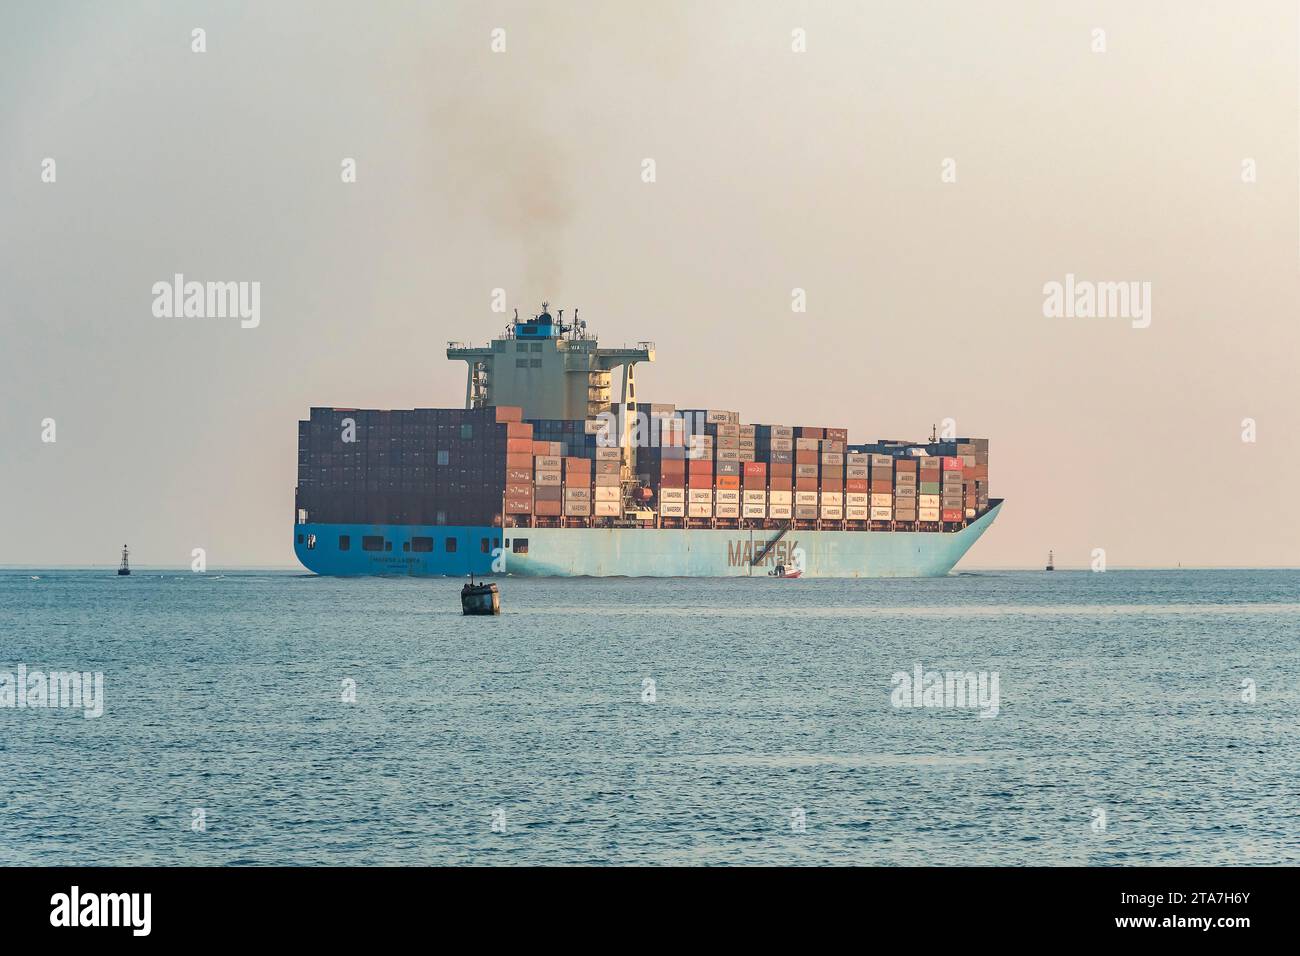 Santos City, Brasilien. Das Containerschiff Maersk labrea verließ den Hafen von Santos am späten Nachmittag. Stockfoto